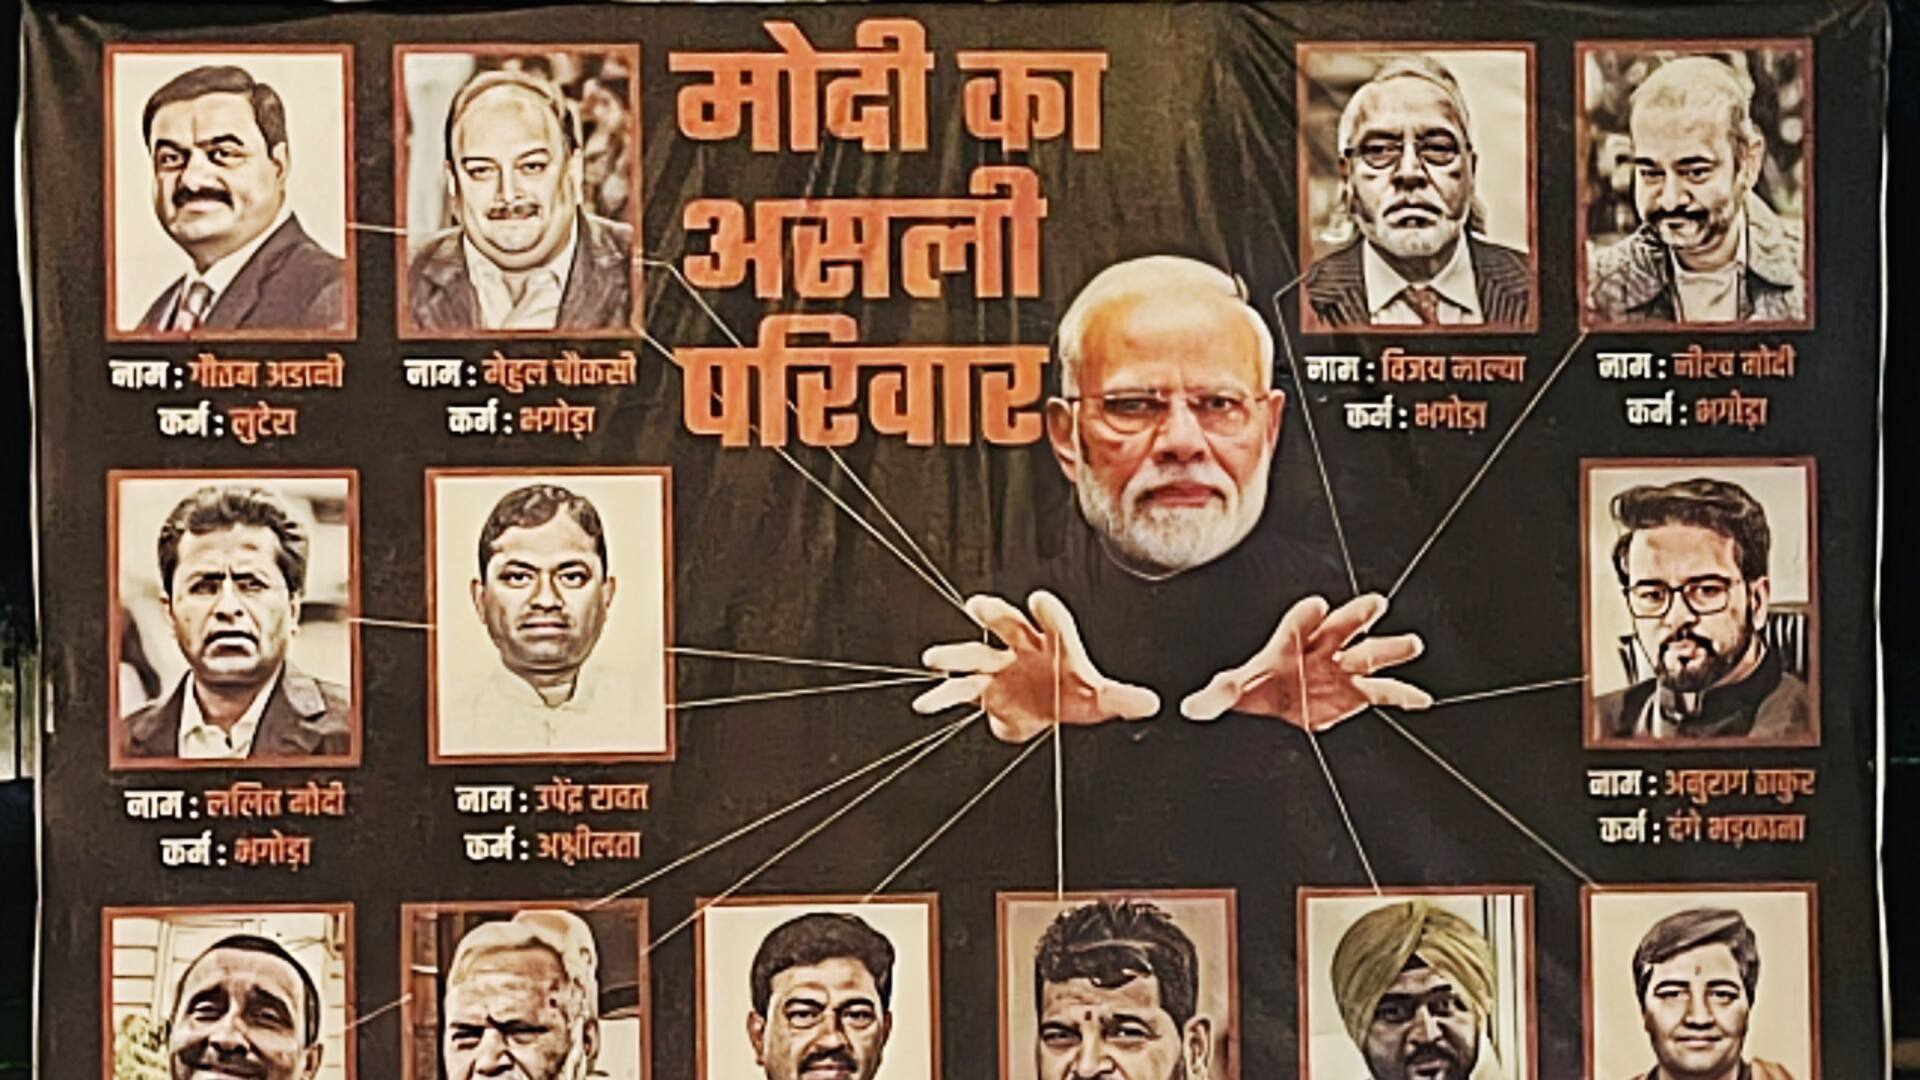 दिल्ली: प्रधानमंत्री मोदी के नीरव मोदी और विजय माल्या के साथ पोस्टर लगे, मामला दर्ज